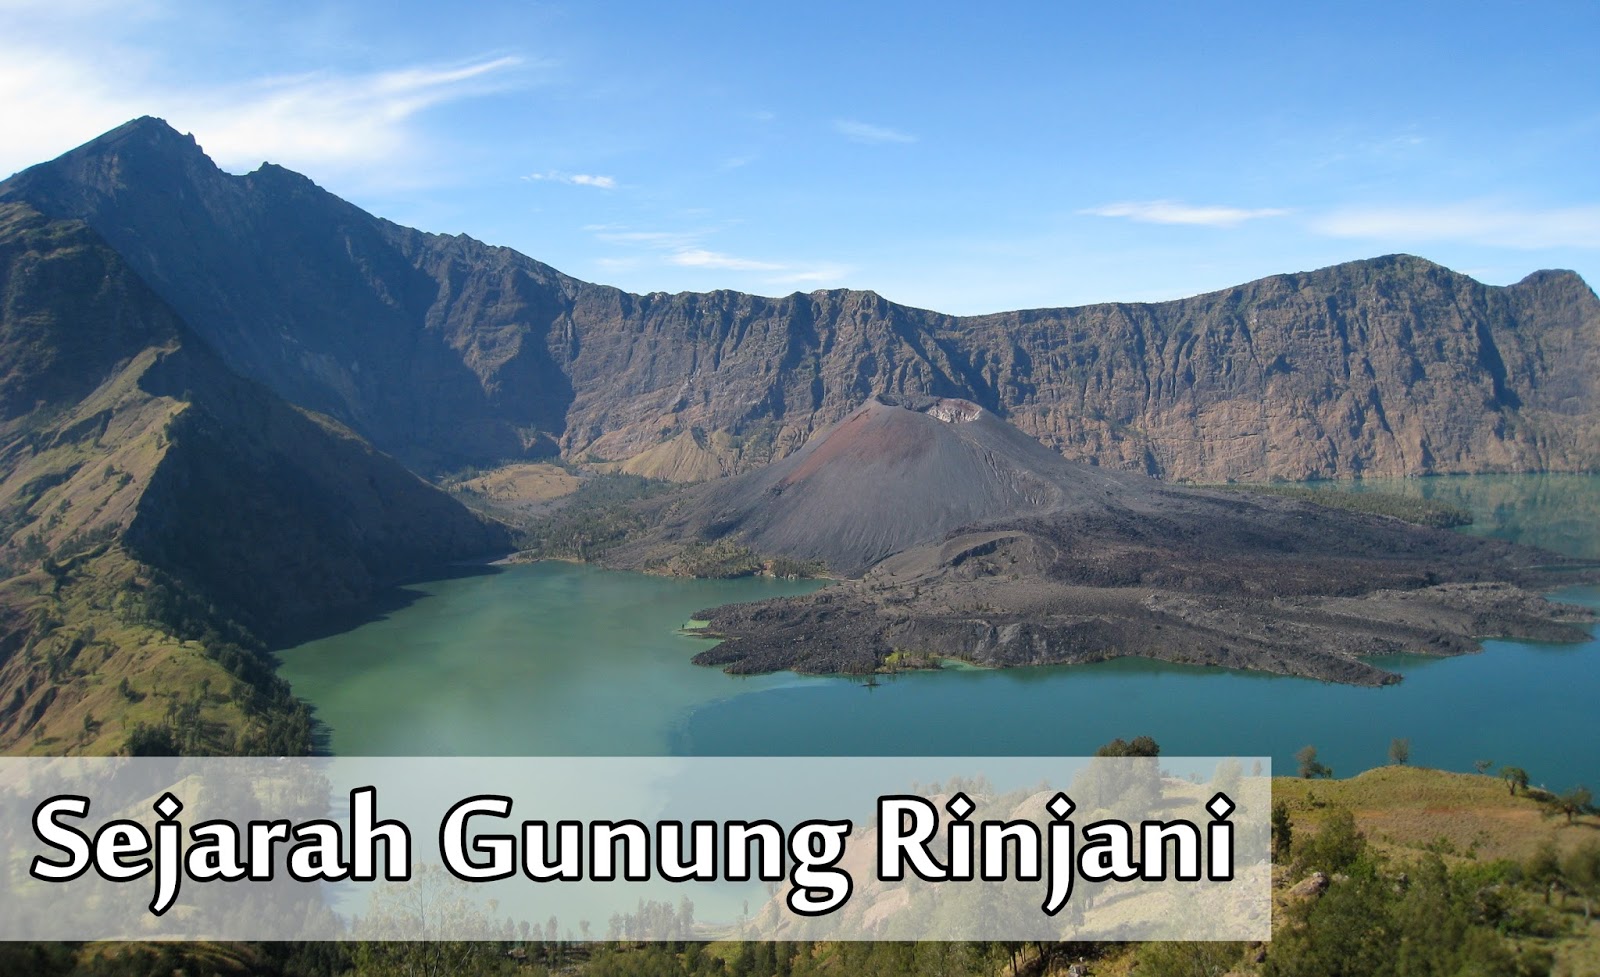 Sejarah Gunung Rinjani dan Danau Segara Anak - Basecamp 